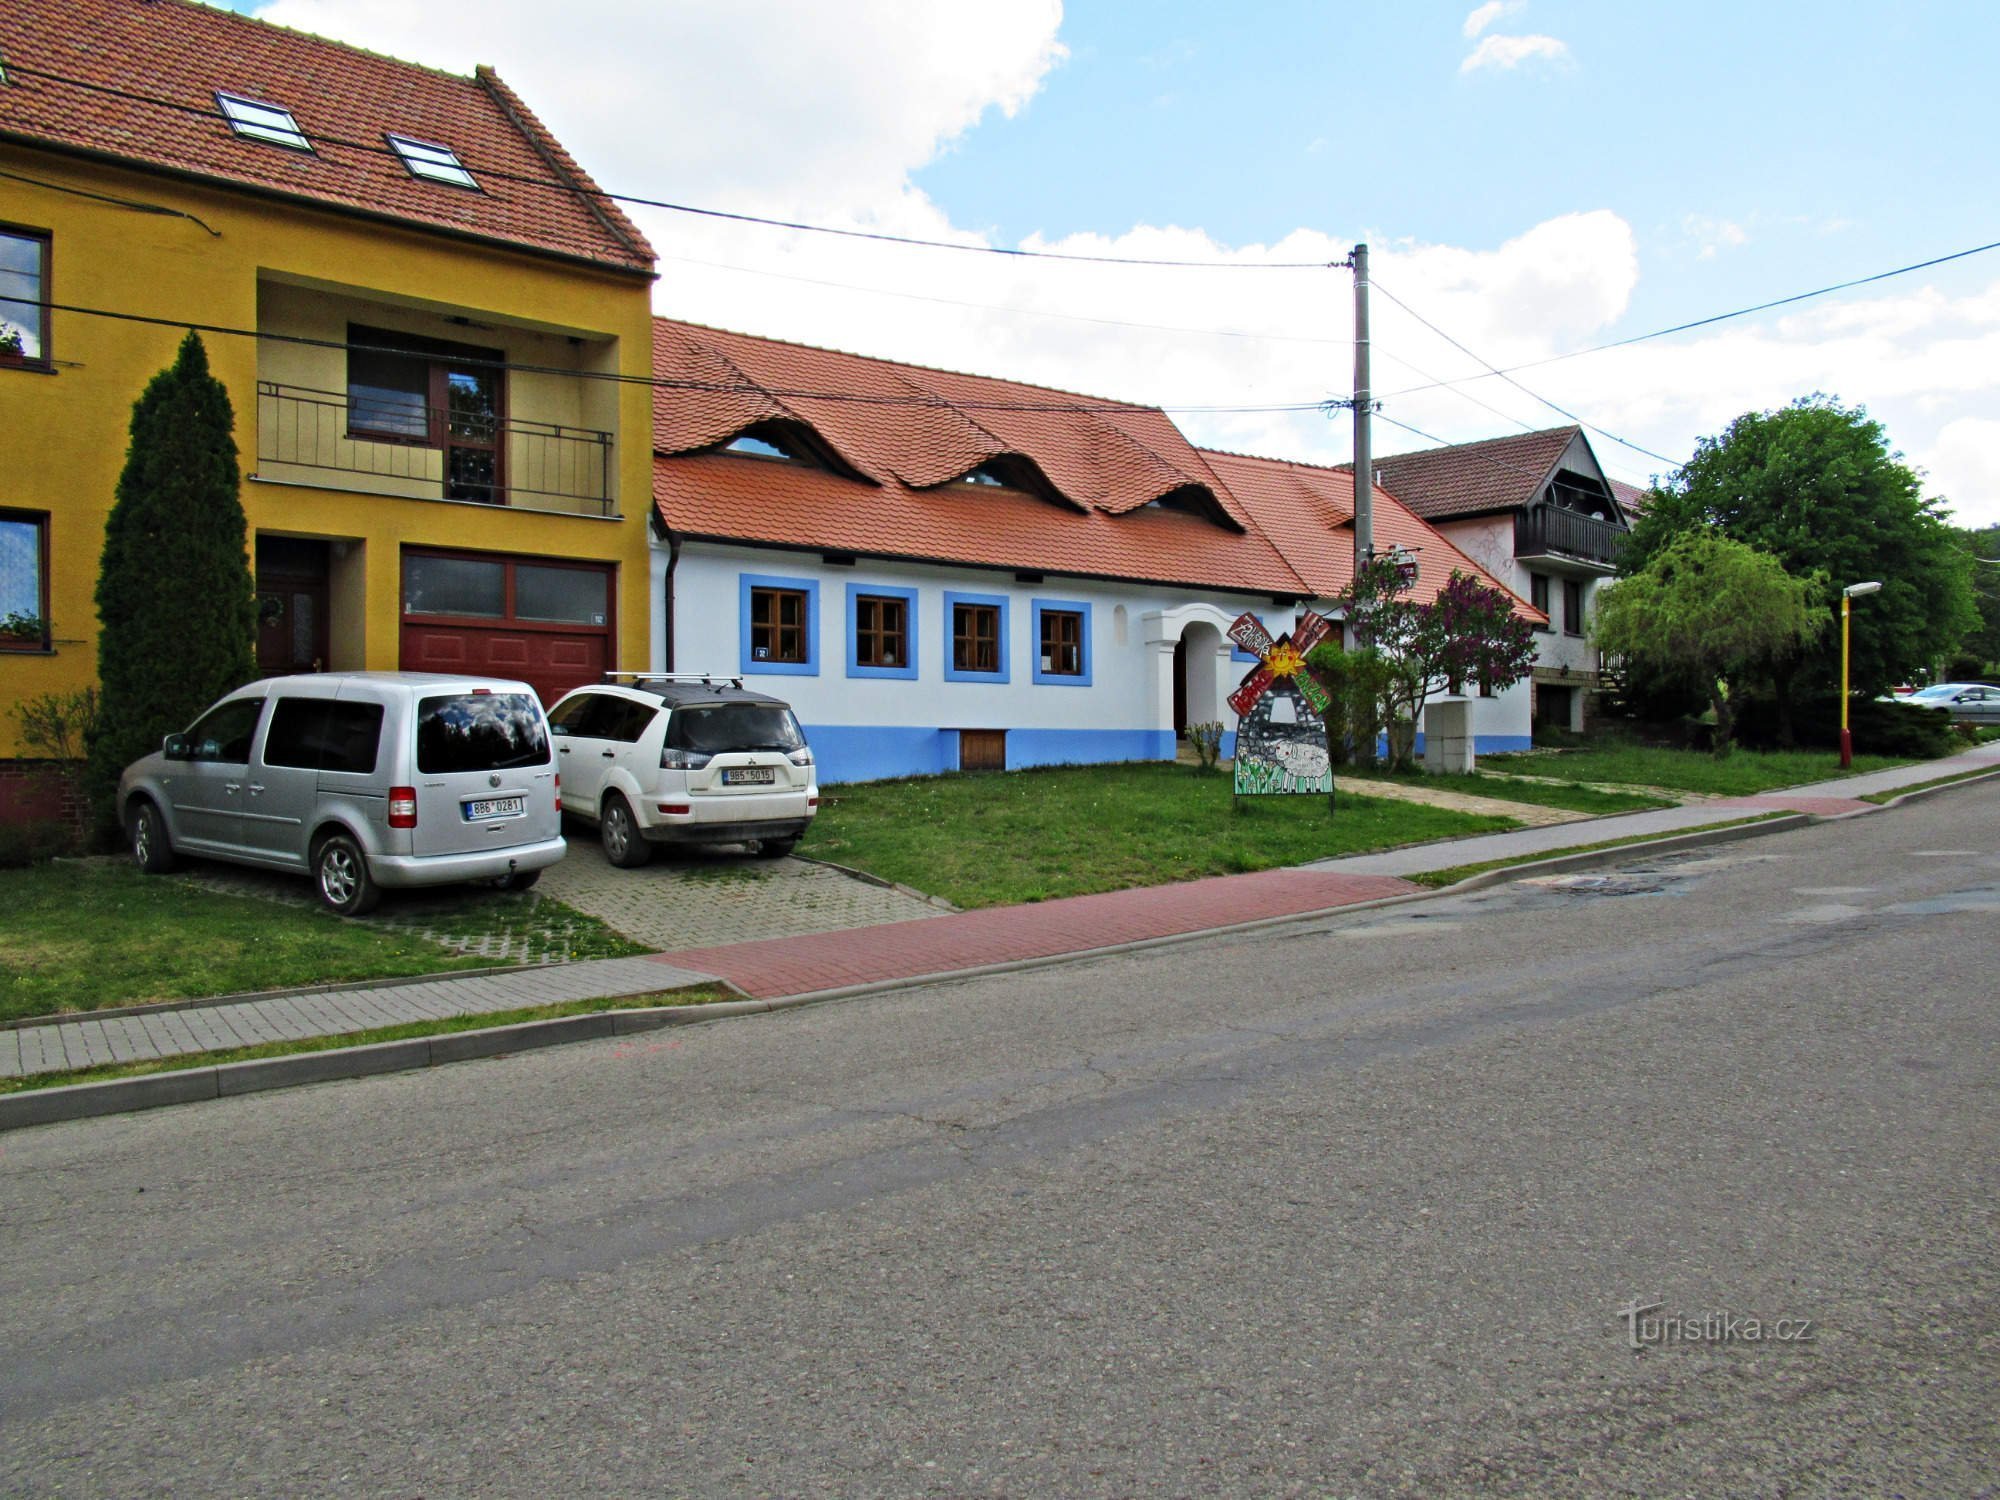 Pensjonat U větrného mlýna w miejscowości Kuželov na Slovácku